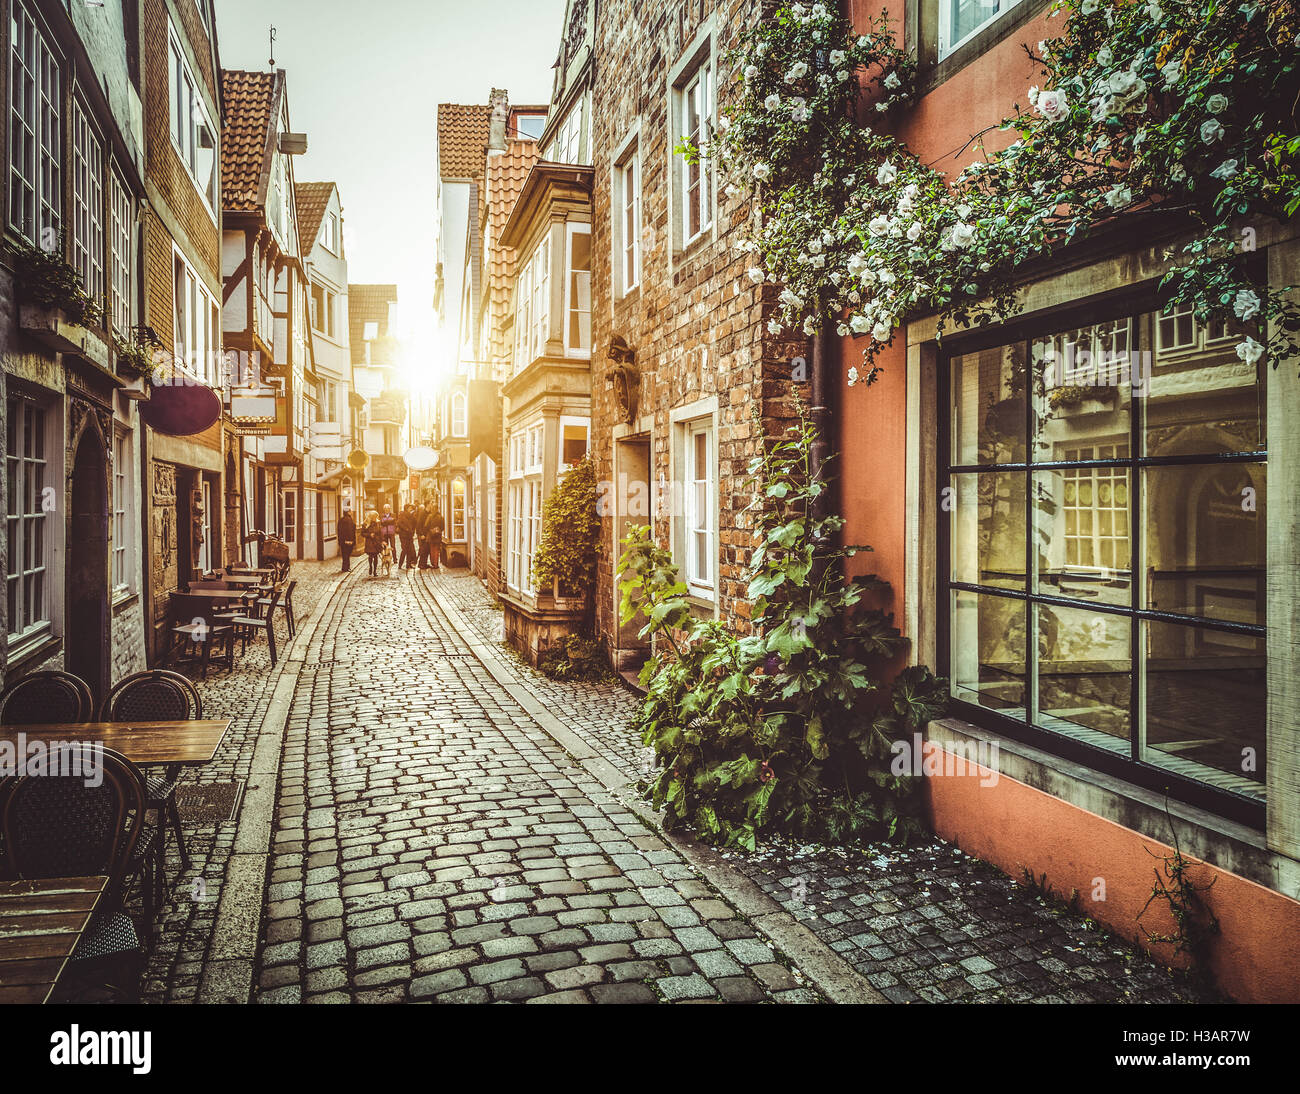 Altstadt in Europa bei Sonnenuntergang mit Retro-Vintage Instagram-Stil-Filter und Lens flare Sonnenlicht-Effekt Stockfoto